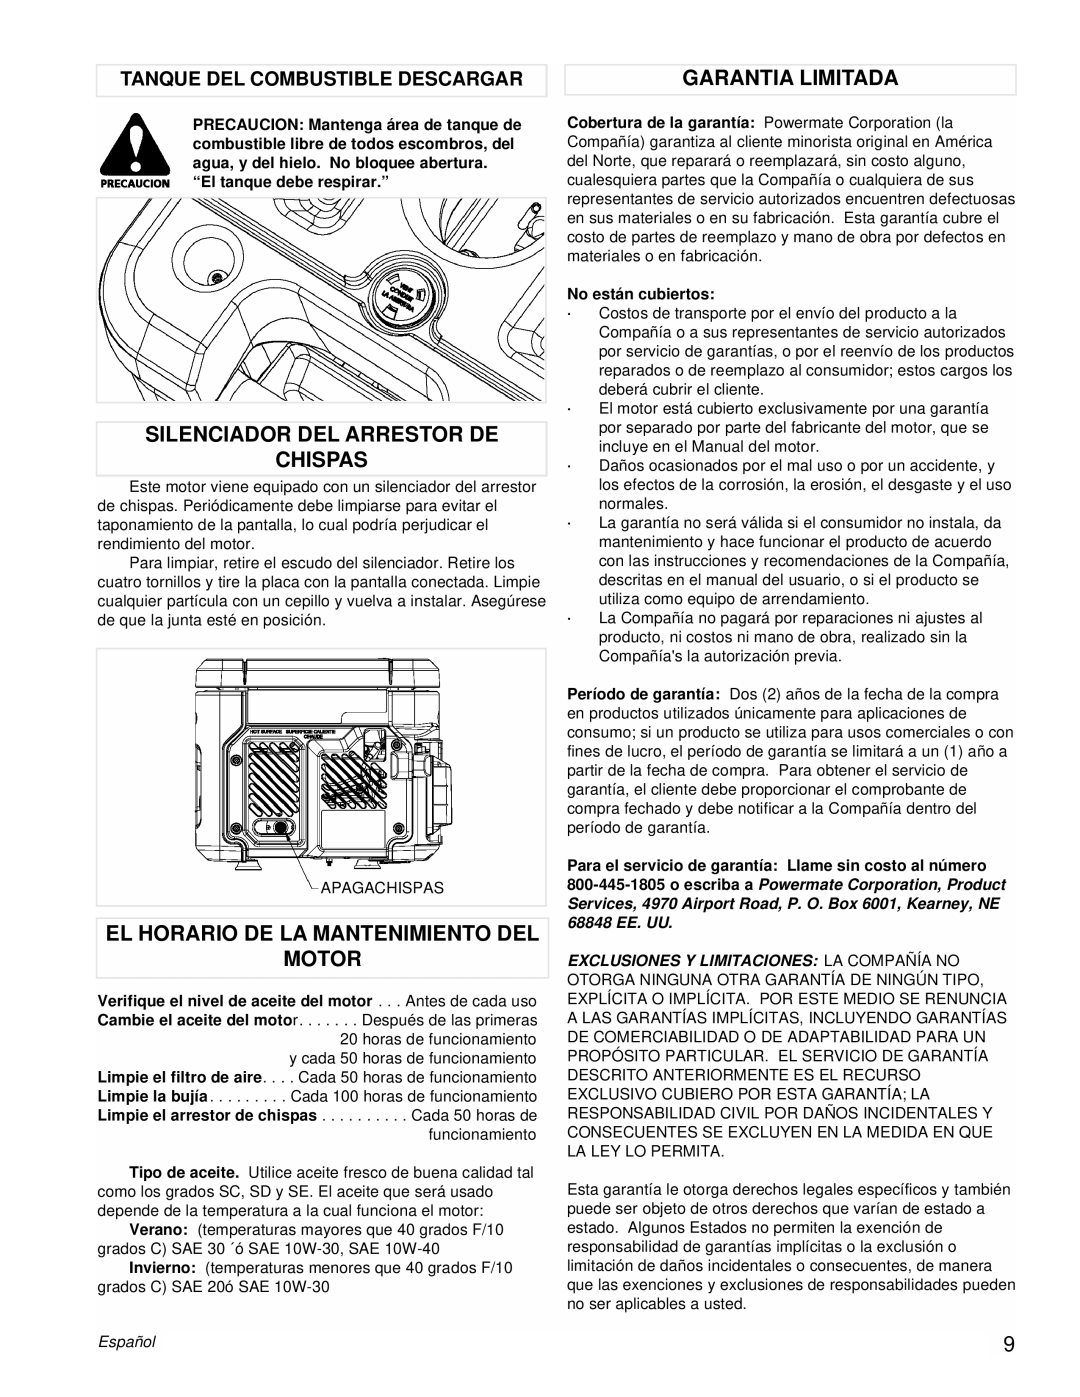 Powermate PMC431800.01 Silenciador Del Arrestor De Chispas, El Horario De La Mantenimiento Del Motor, Garantia Limitada 